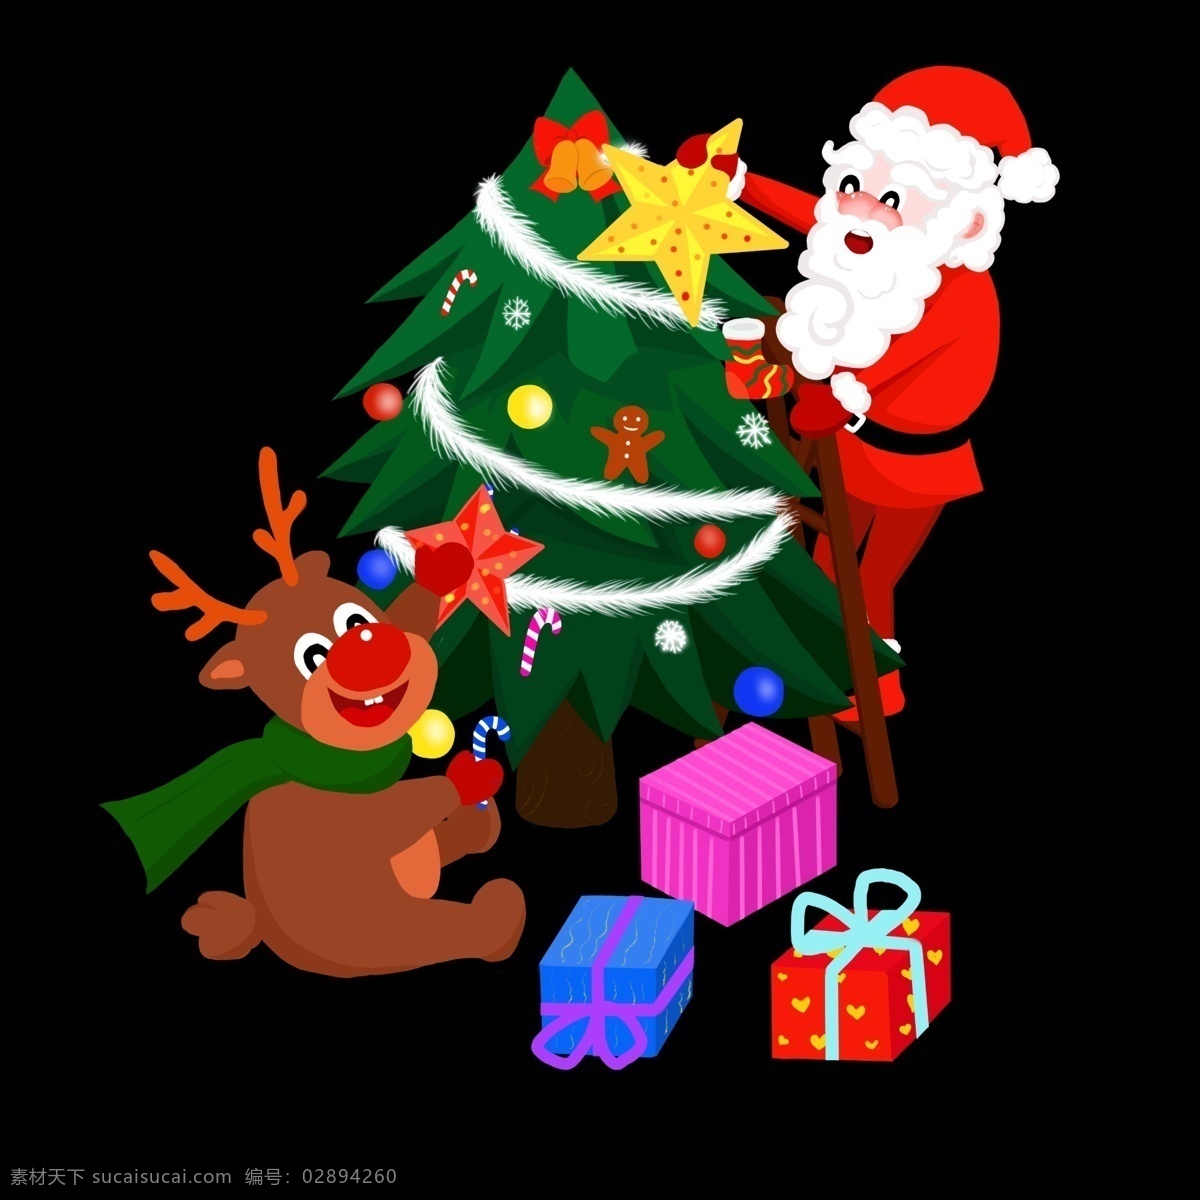 圣诞老人 圣诞树 手绘 卡通 人物 彩色 装饰 平面设计 原创 透明底 免抠 节日 海报装饰 清新 通用